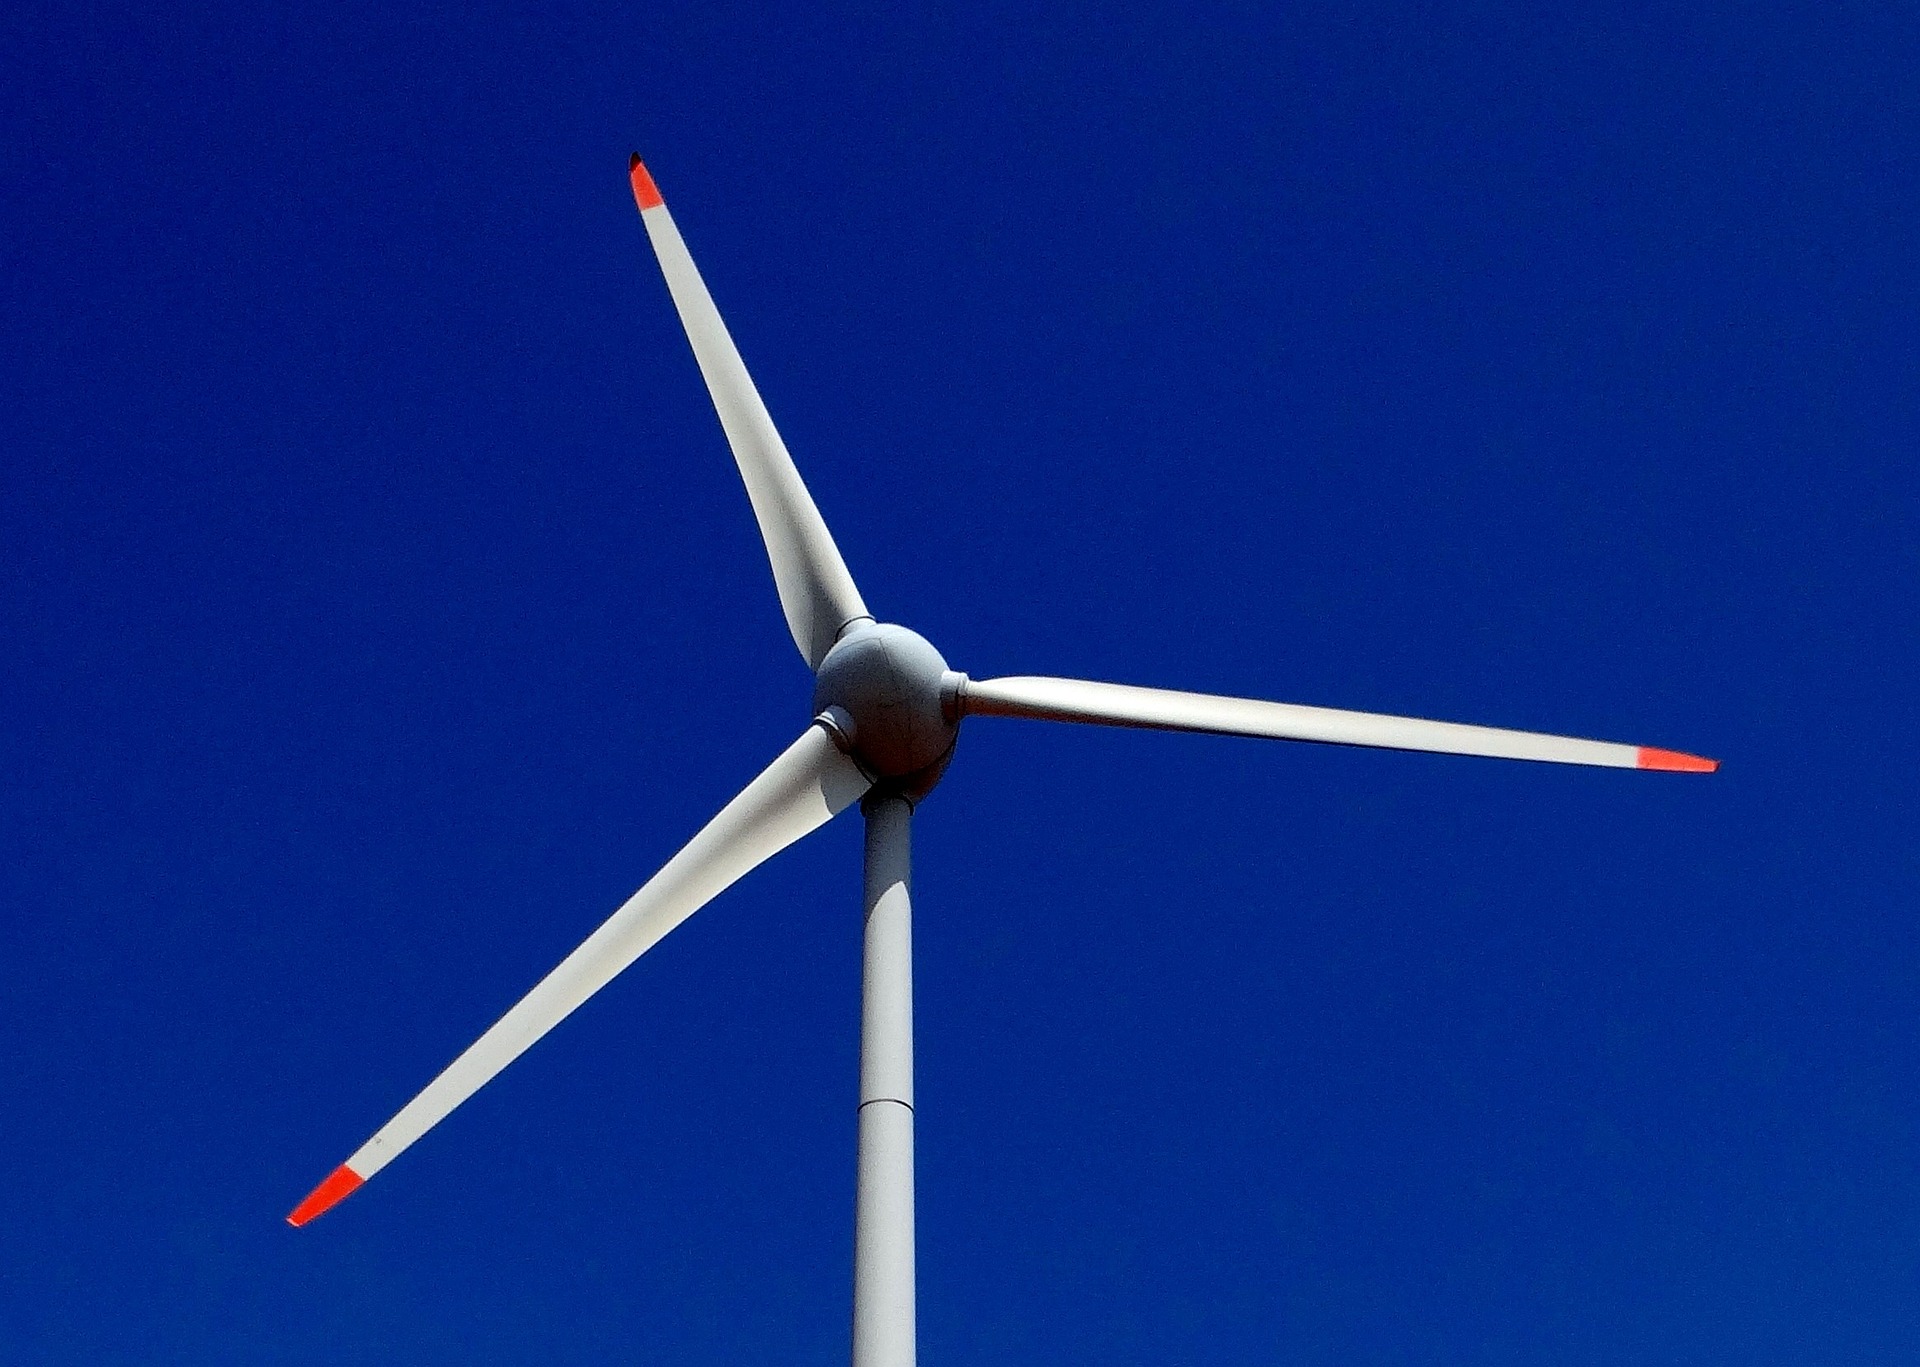 Galp compra parque eólico no Rio Grande do Norte. Na imagem: hélice eólica branca sob céu azul (Foto: Bishnu Sarangi/Pixabay)